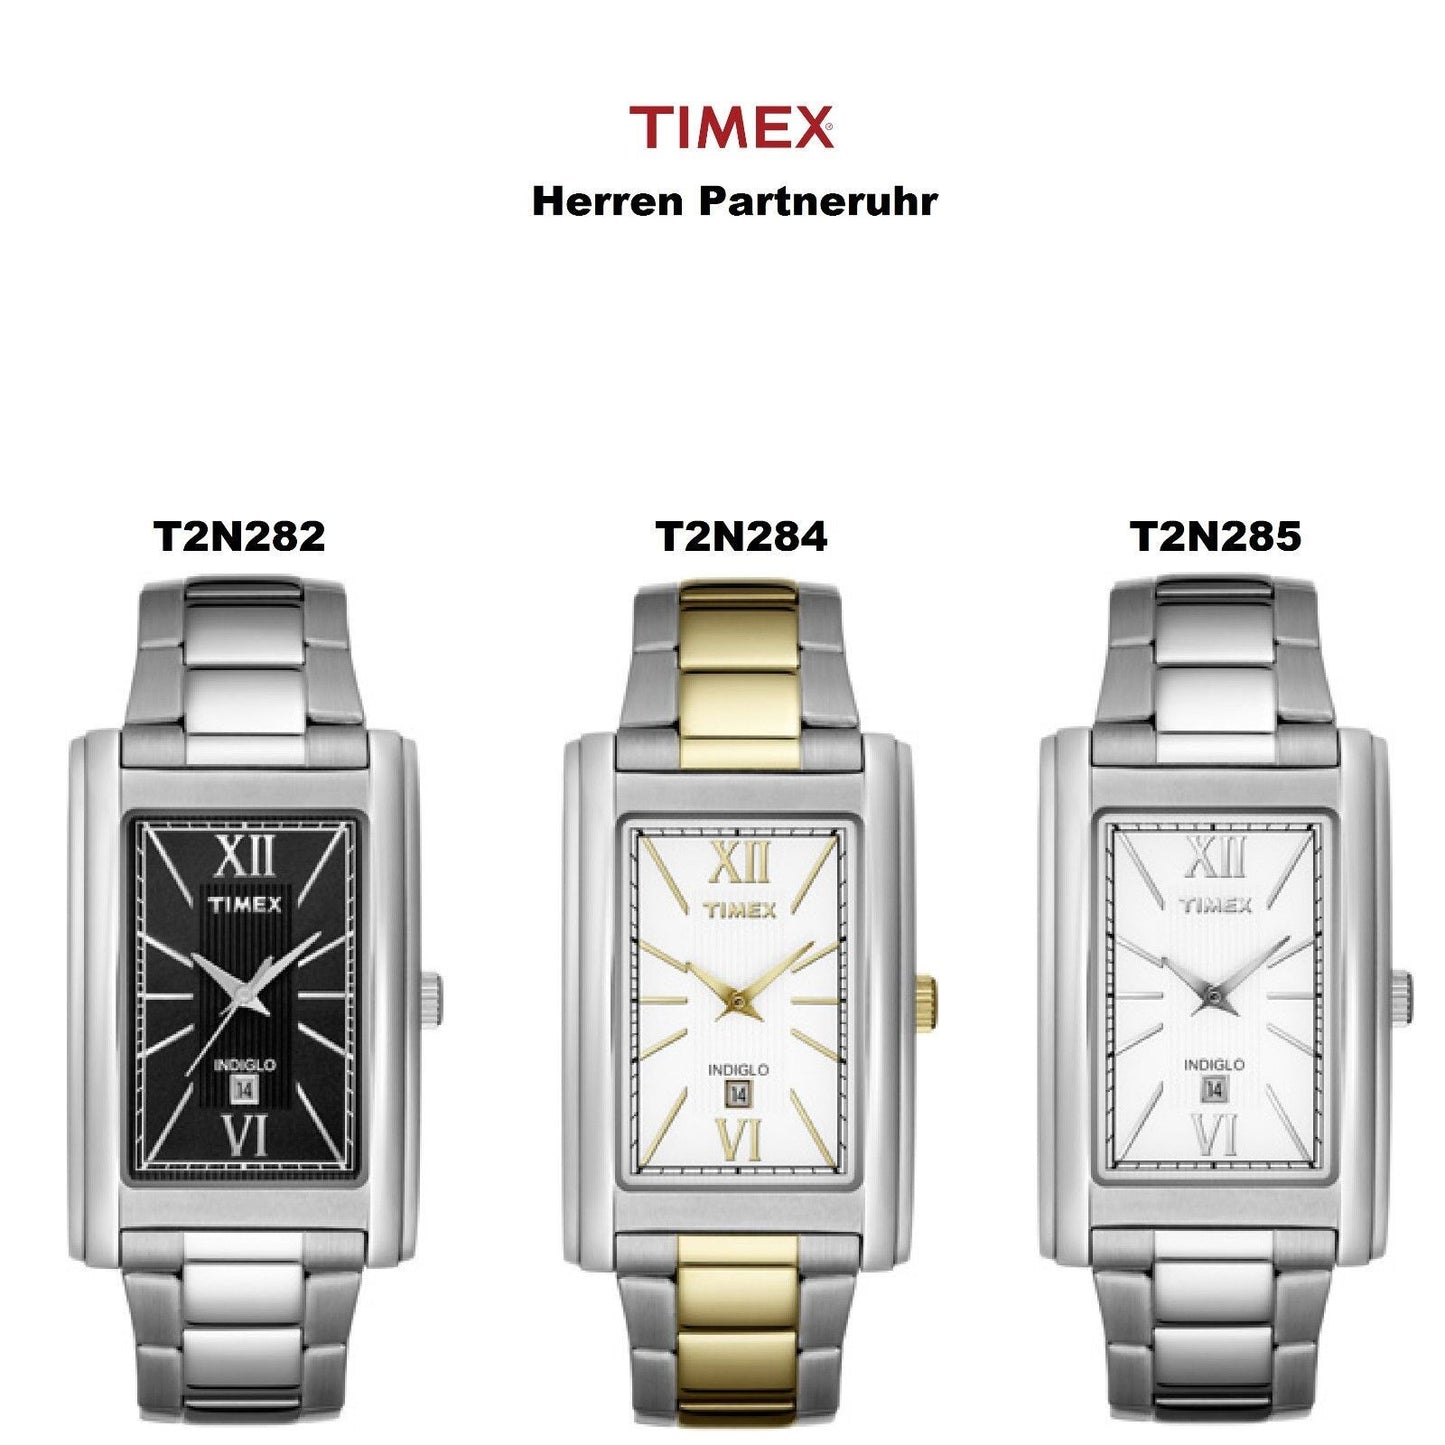 Timex Ersatzarmband T2N282 & T2N285 Herren Partneruhr - Edelstahl - passt T2N284